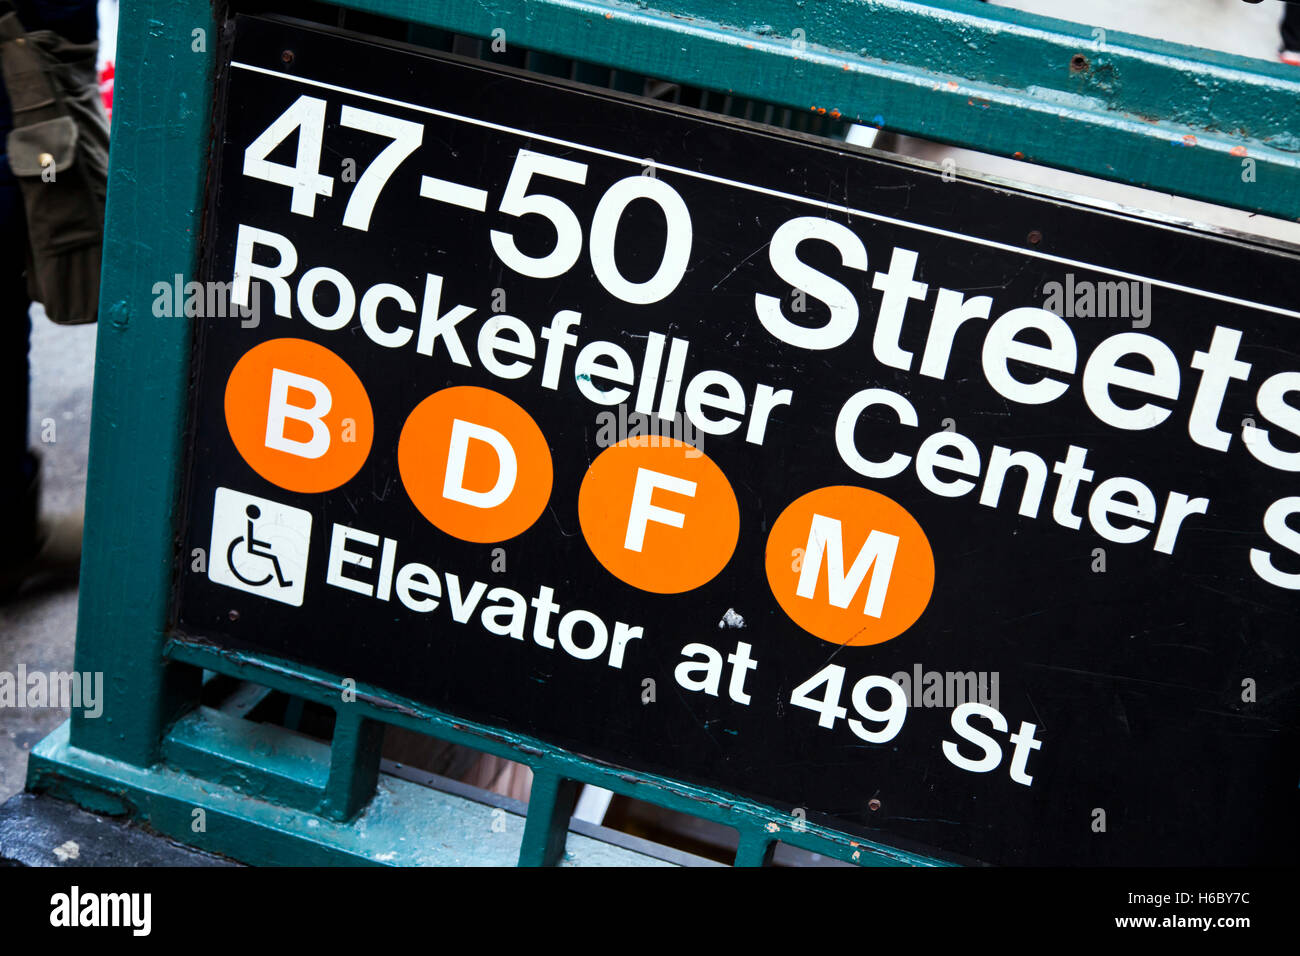 Son représentant signe l'entrée de la 47 à 50 st. La station de métro Rockefeller Center de Manhattan, à New-York. Banque D'Images